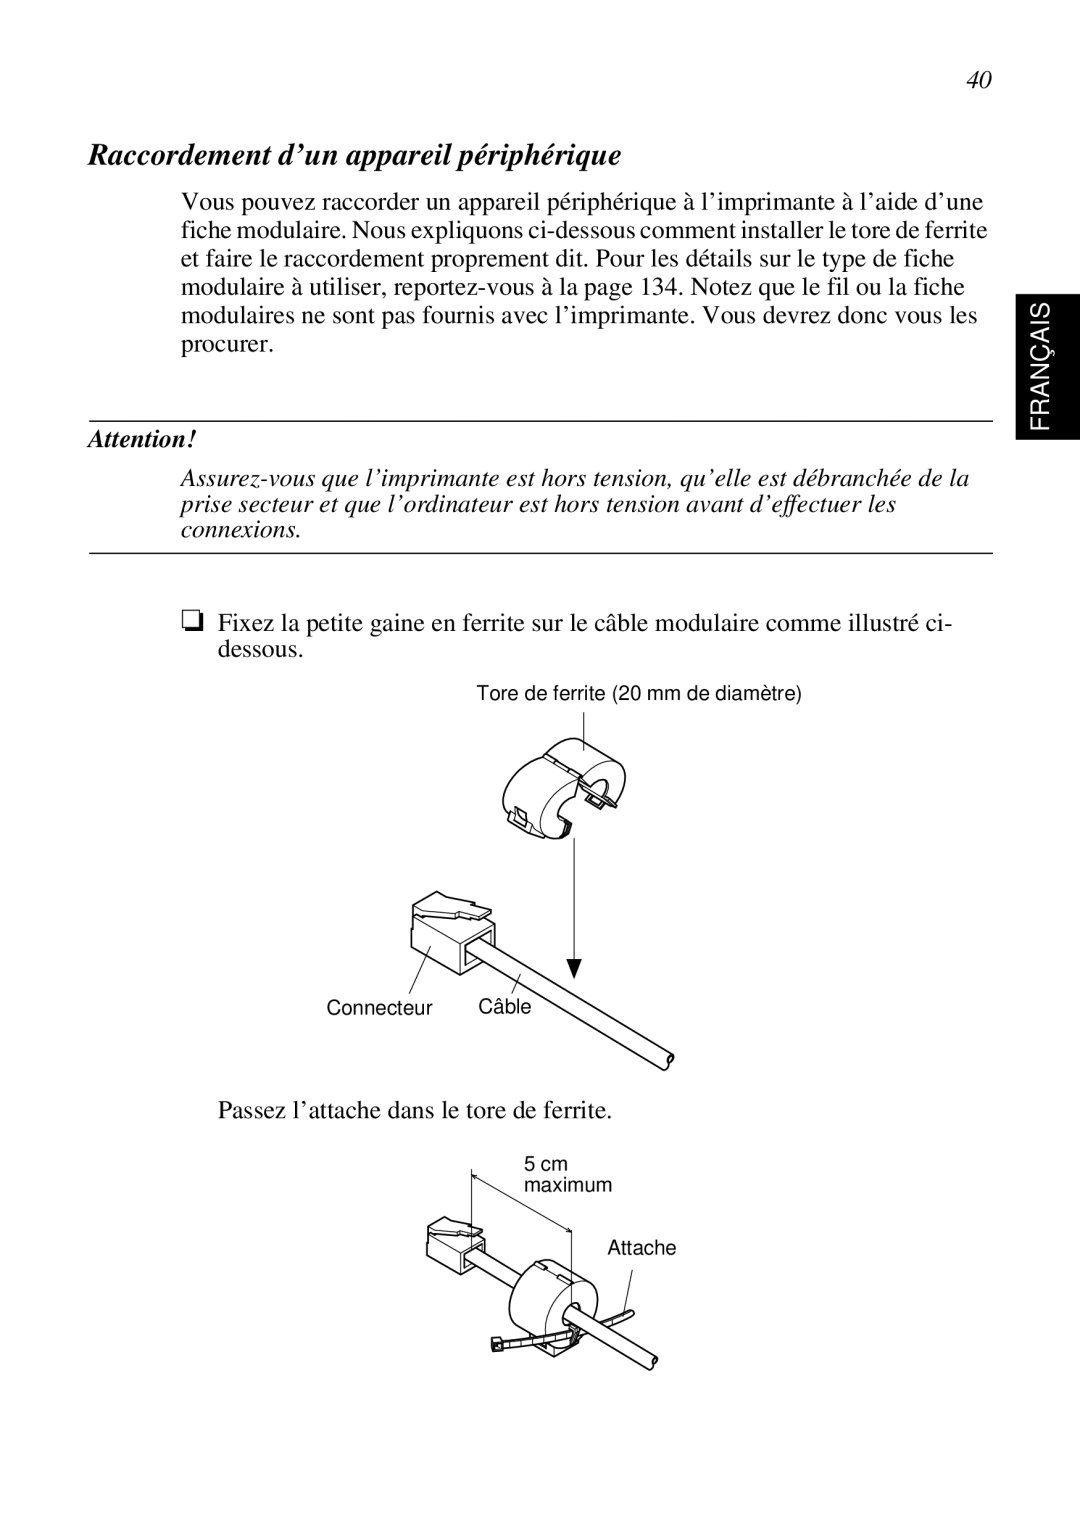 Star Micronics SP298 user manual Raccordement d’un appareil périphérique, Français 